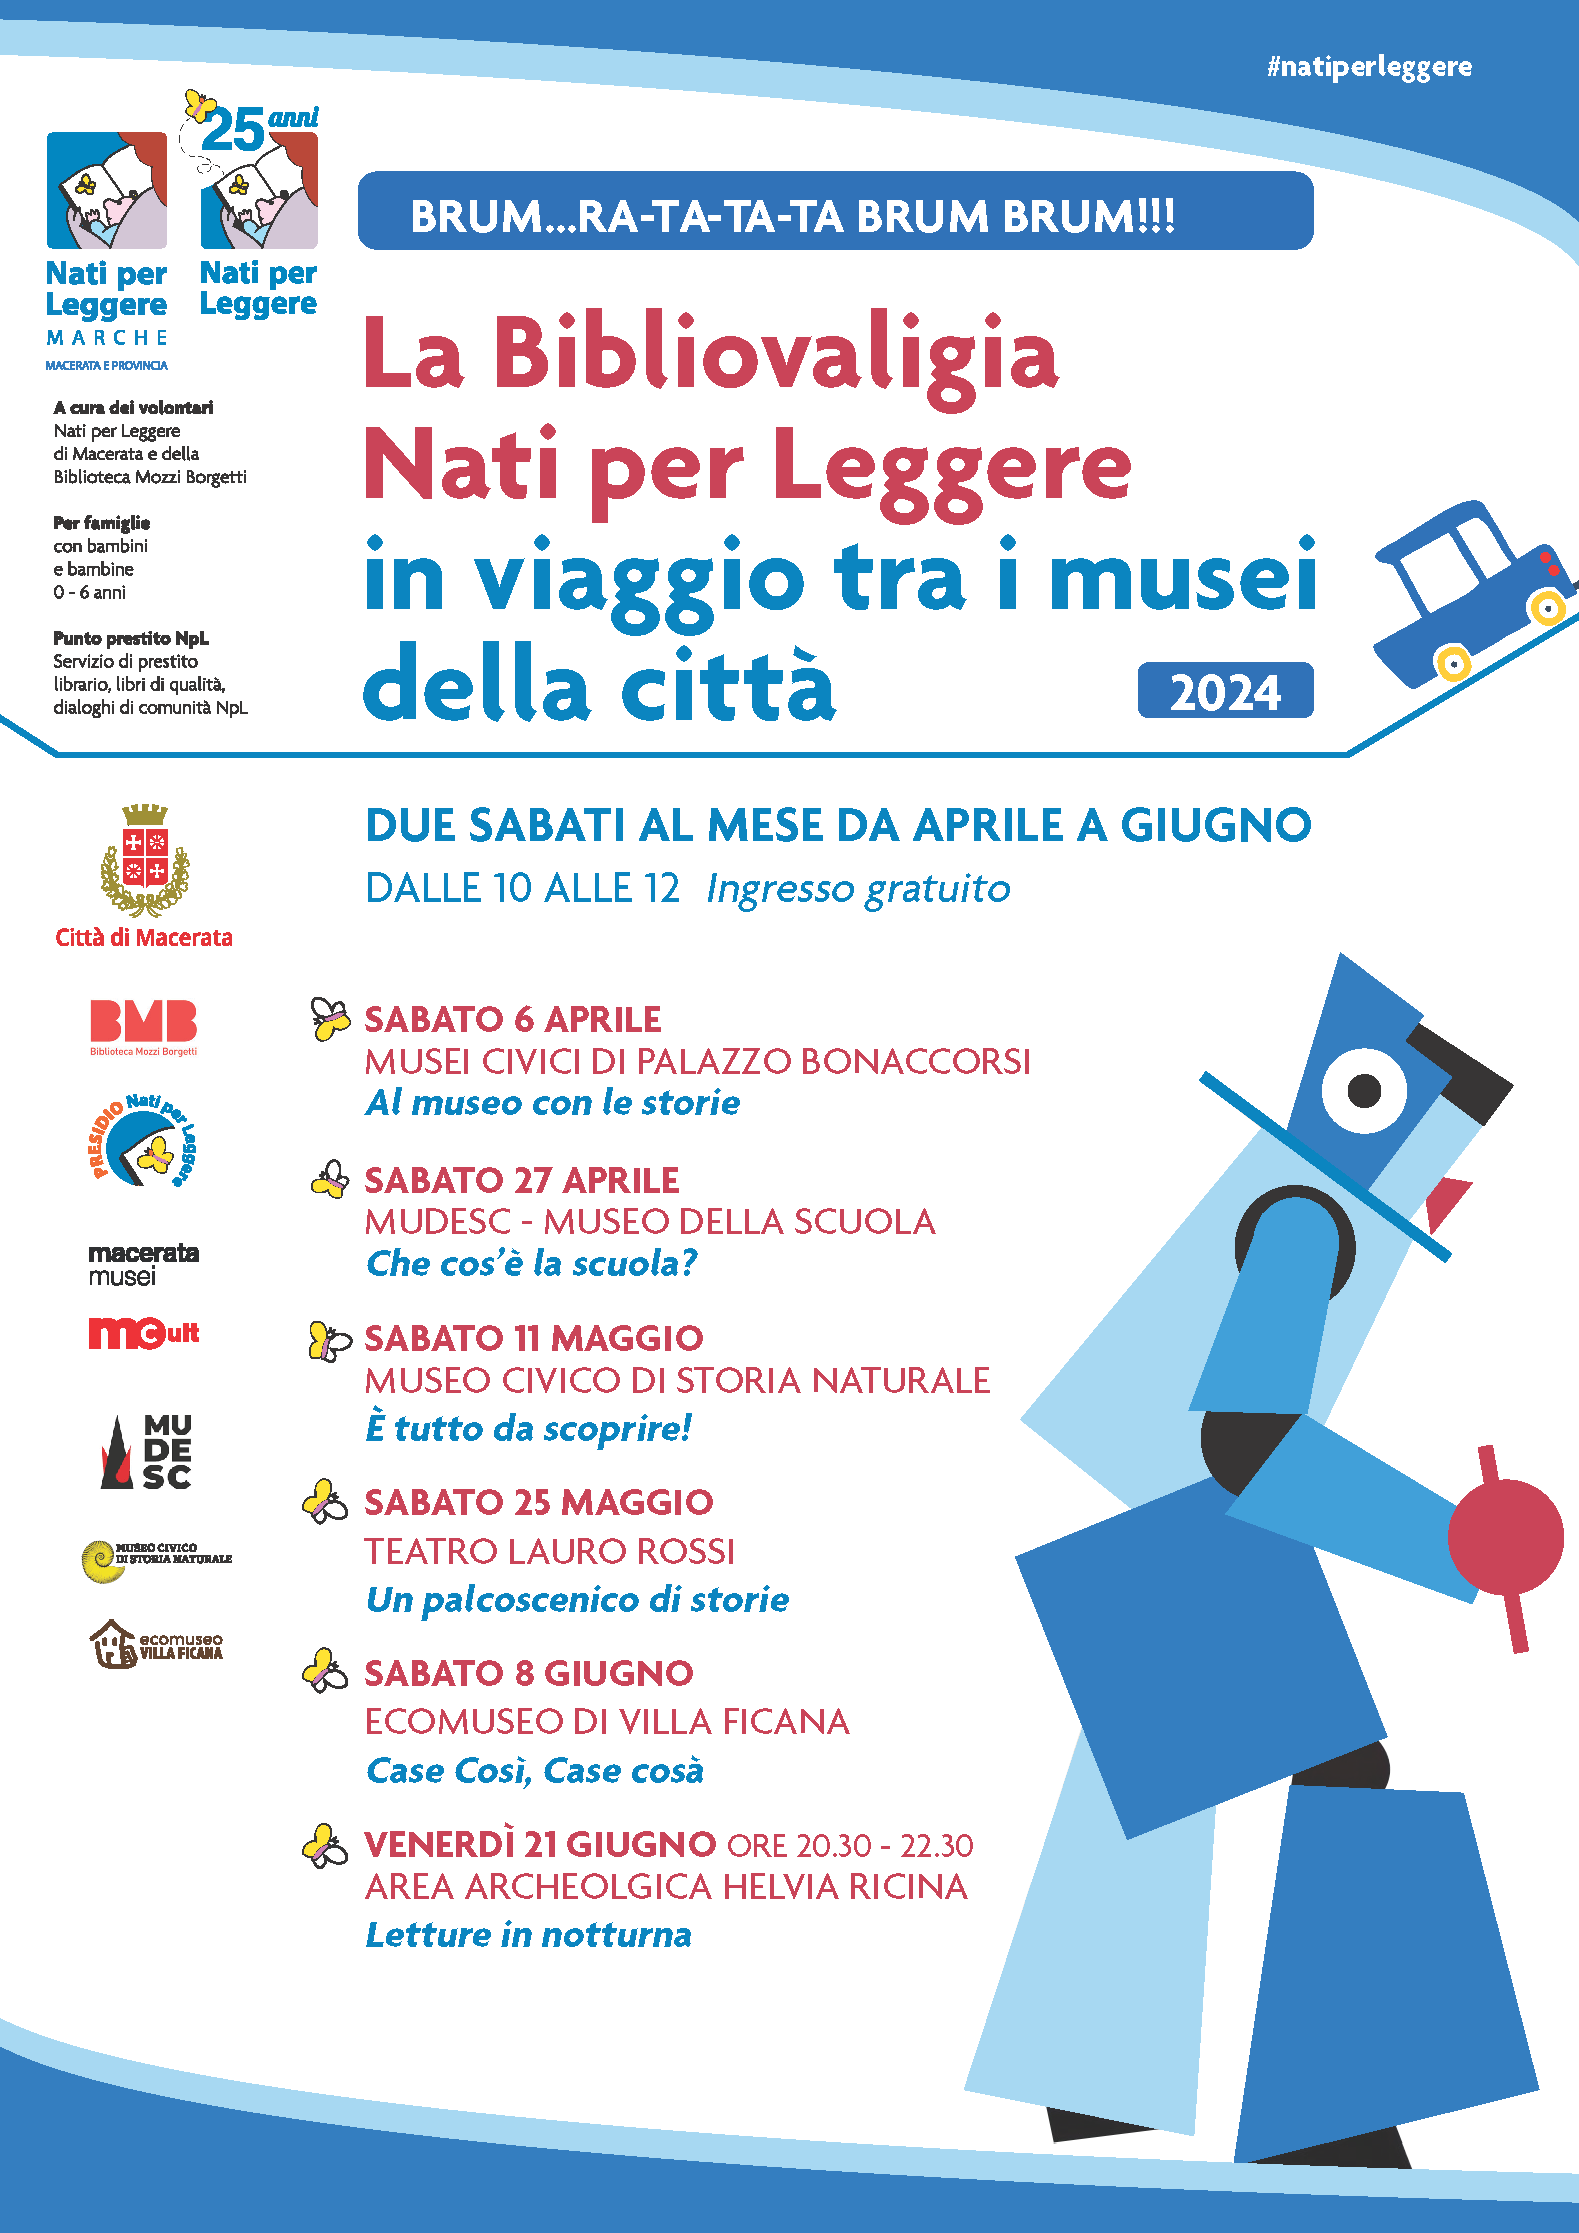 Locandina evento "La Bibliovaligia" - Musei Macerata